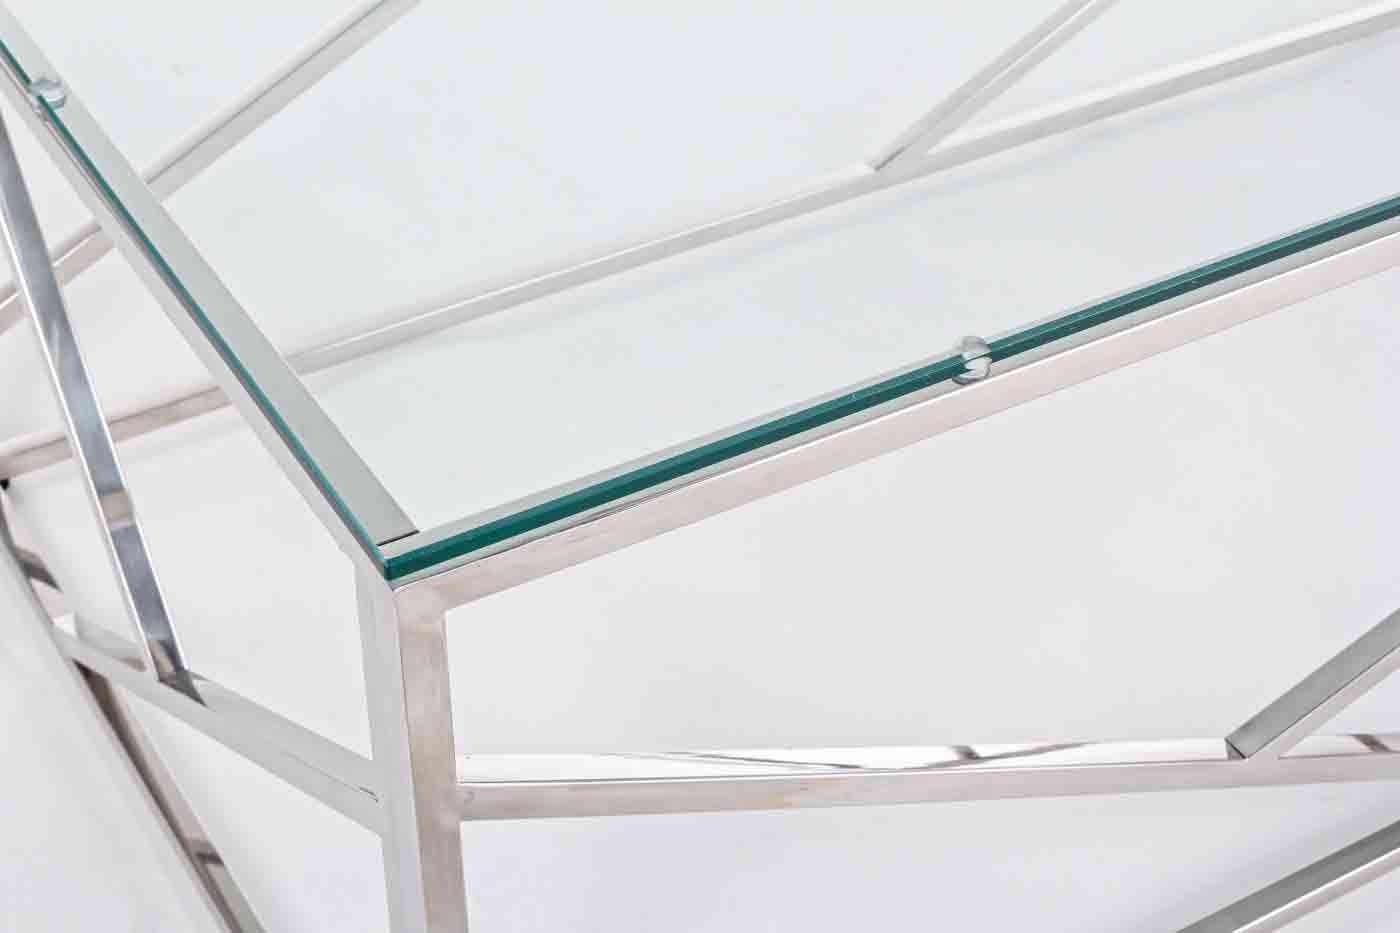 Couchtisch Rayan in einem modernen Design. Hergestellt aus Metall  in einem silbernen Farbton. Die Tischplatte ist aus Glas. Marke Bizotto.